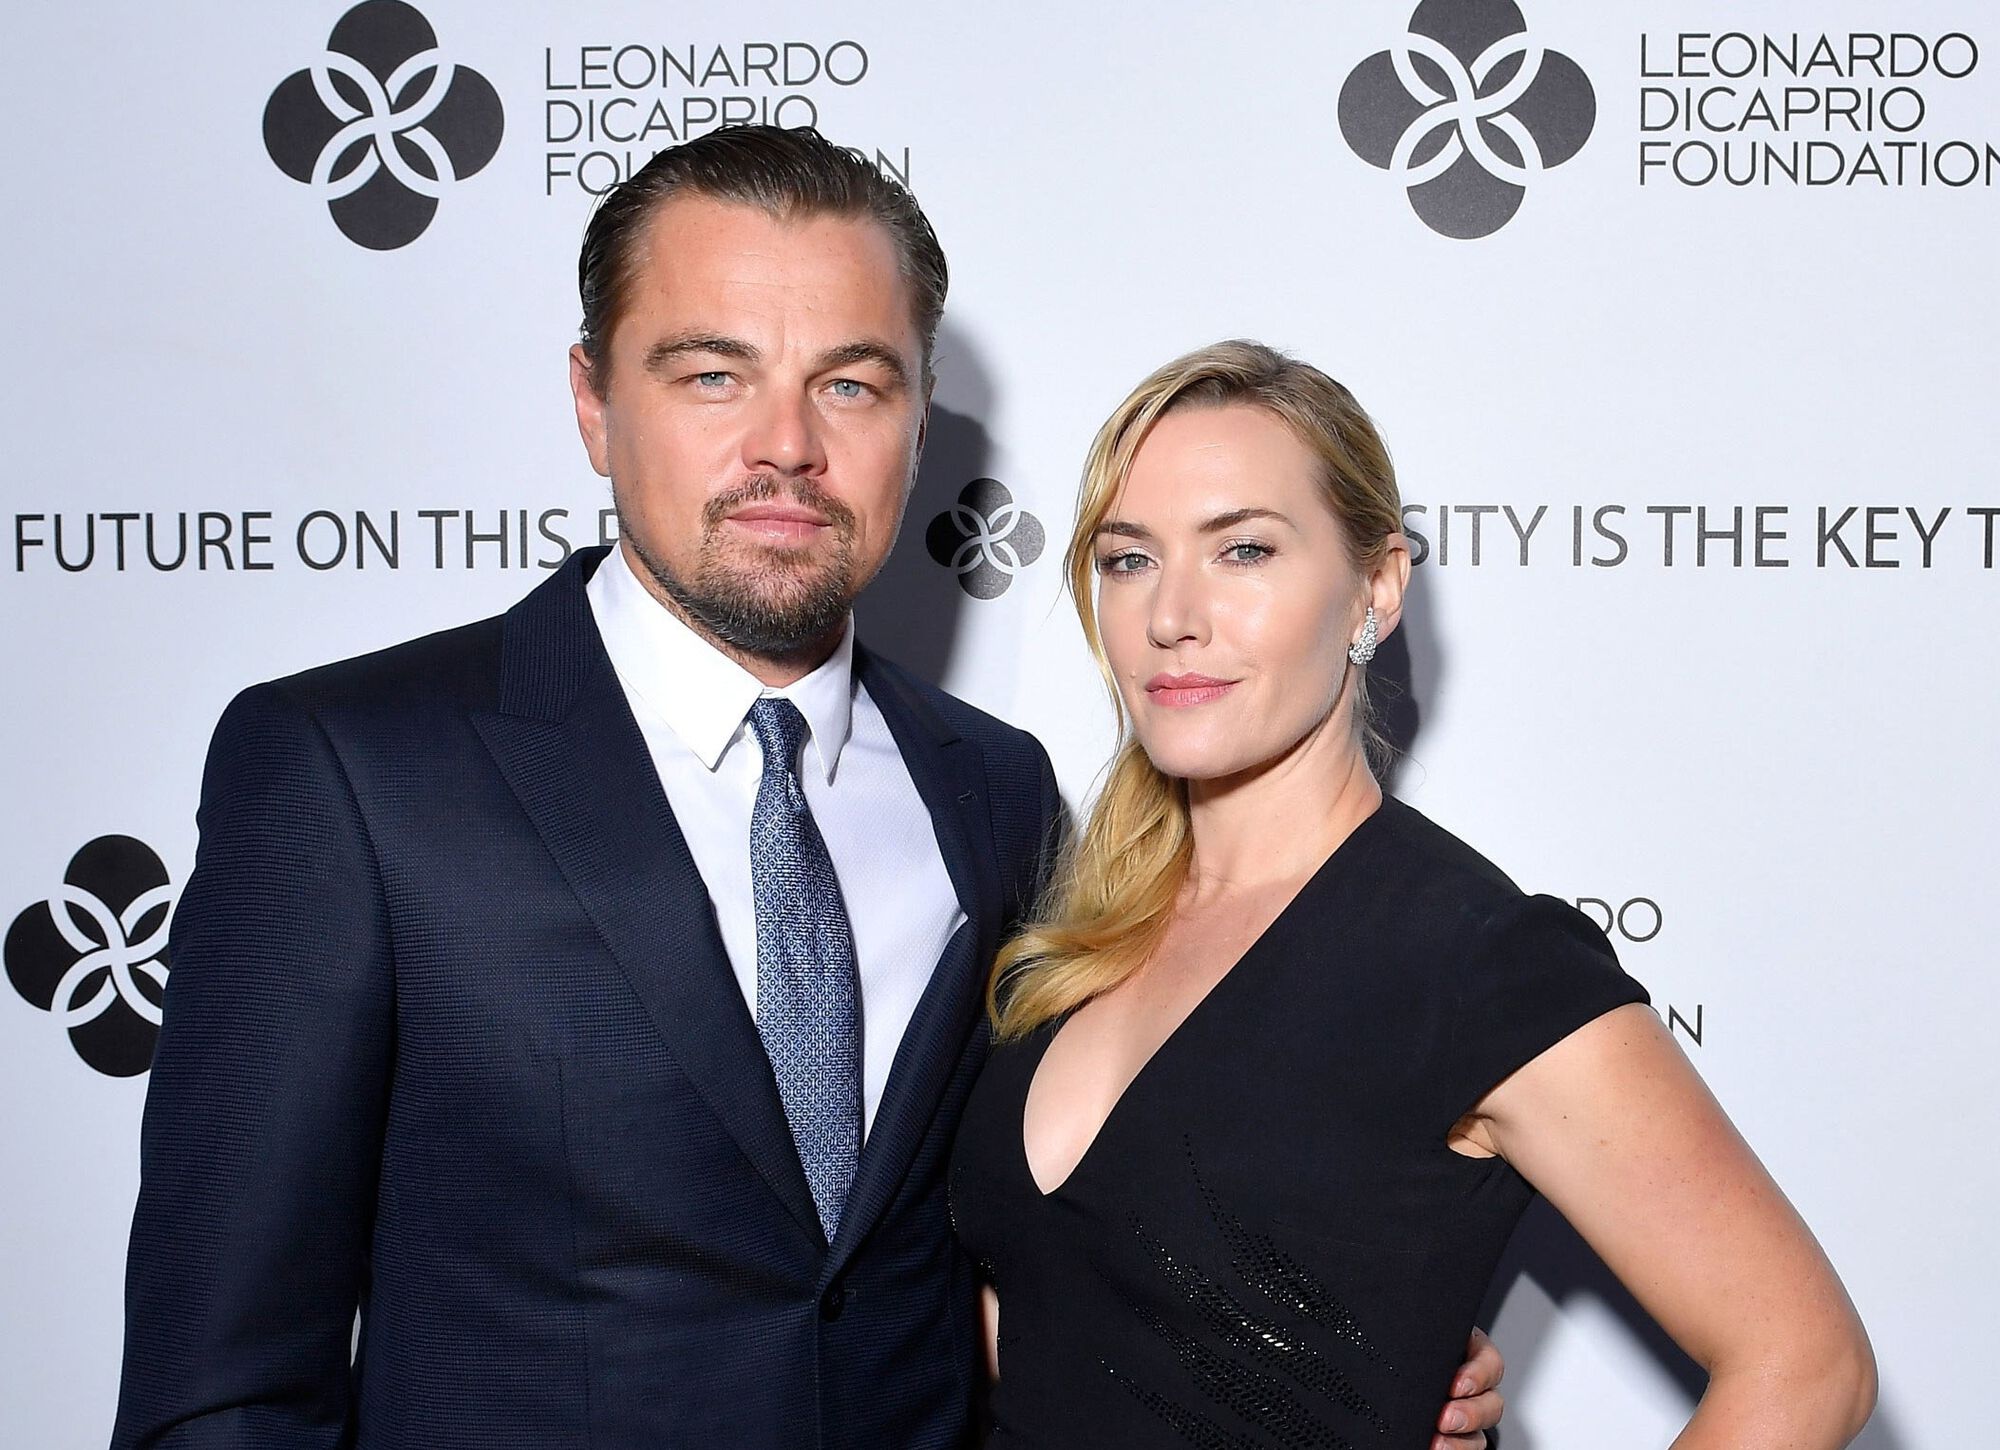 Leonardo Dicaprio Foundation Kate Winslet